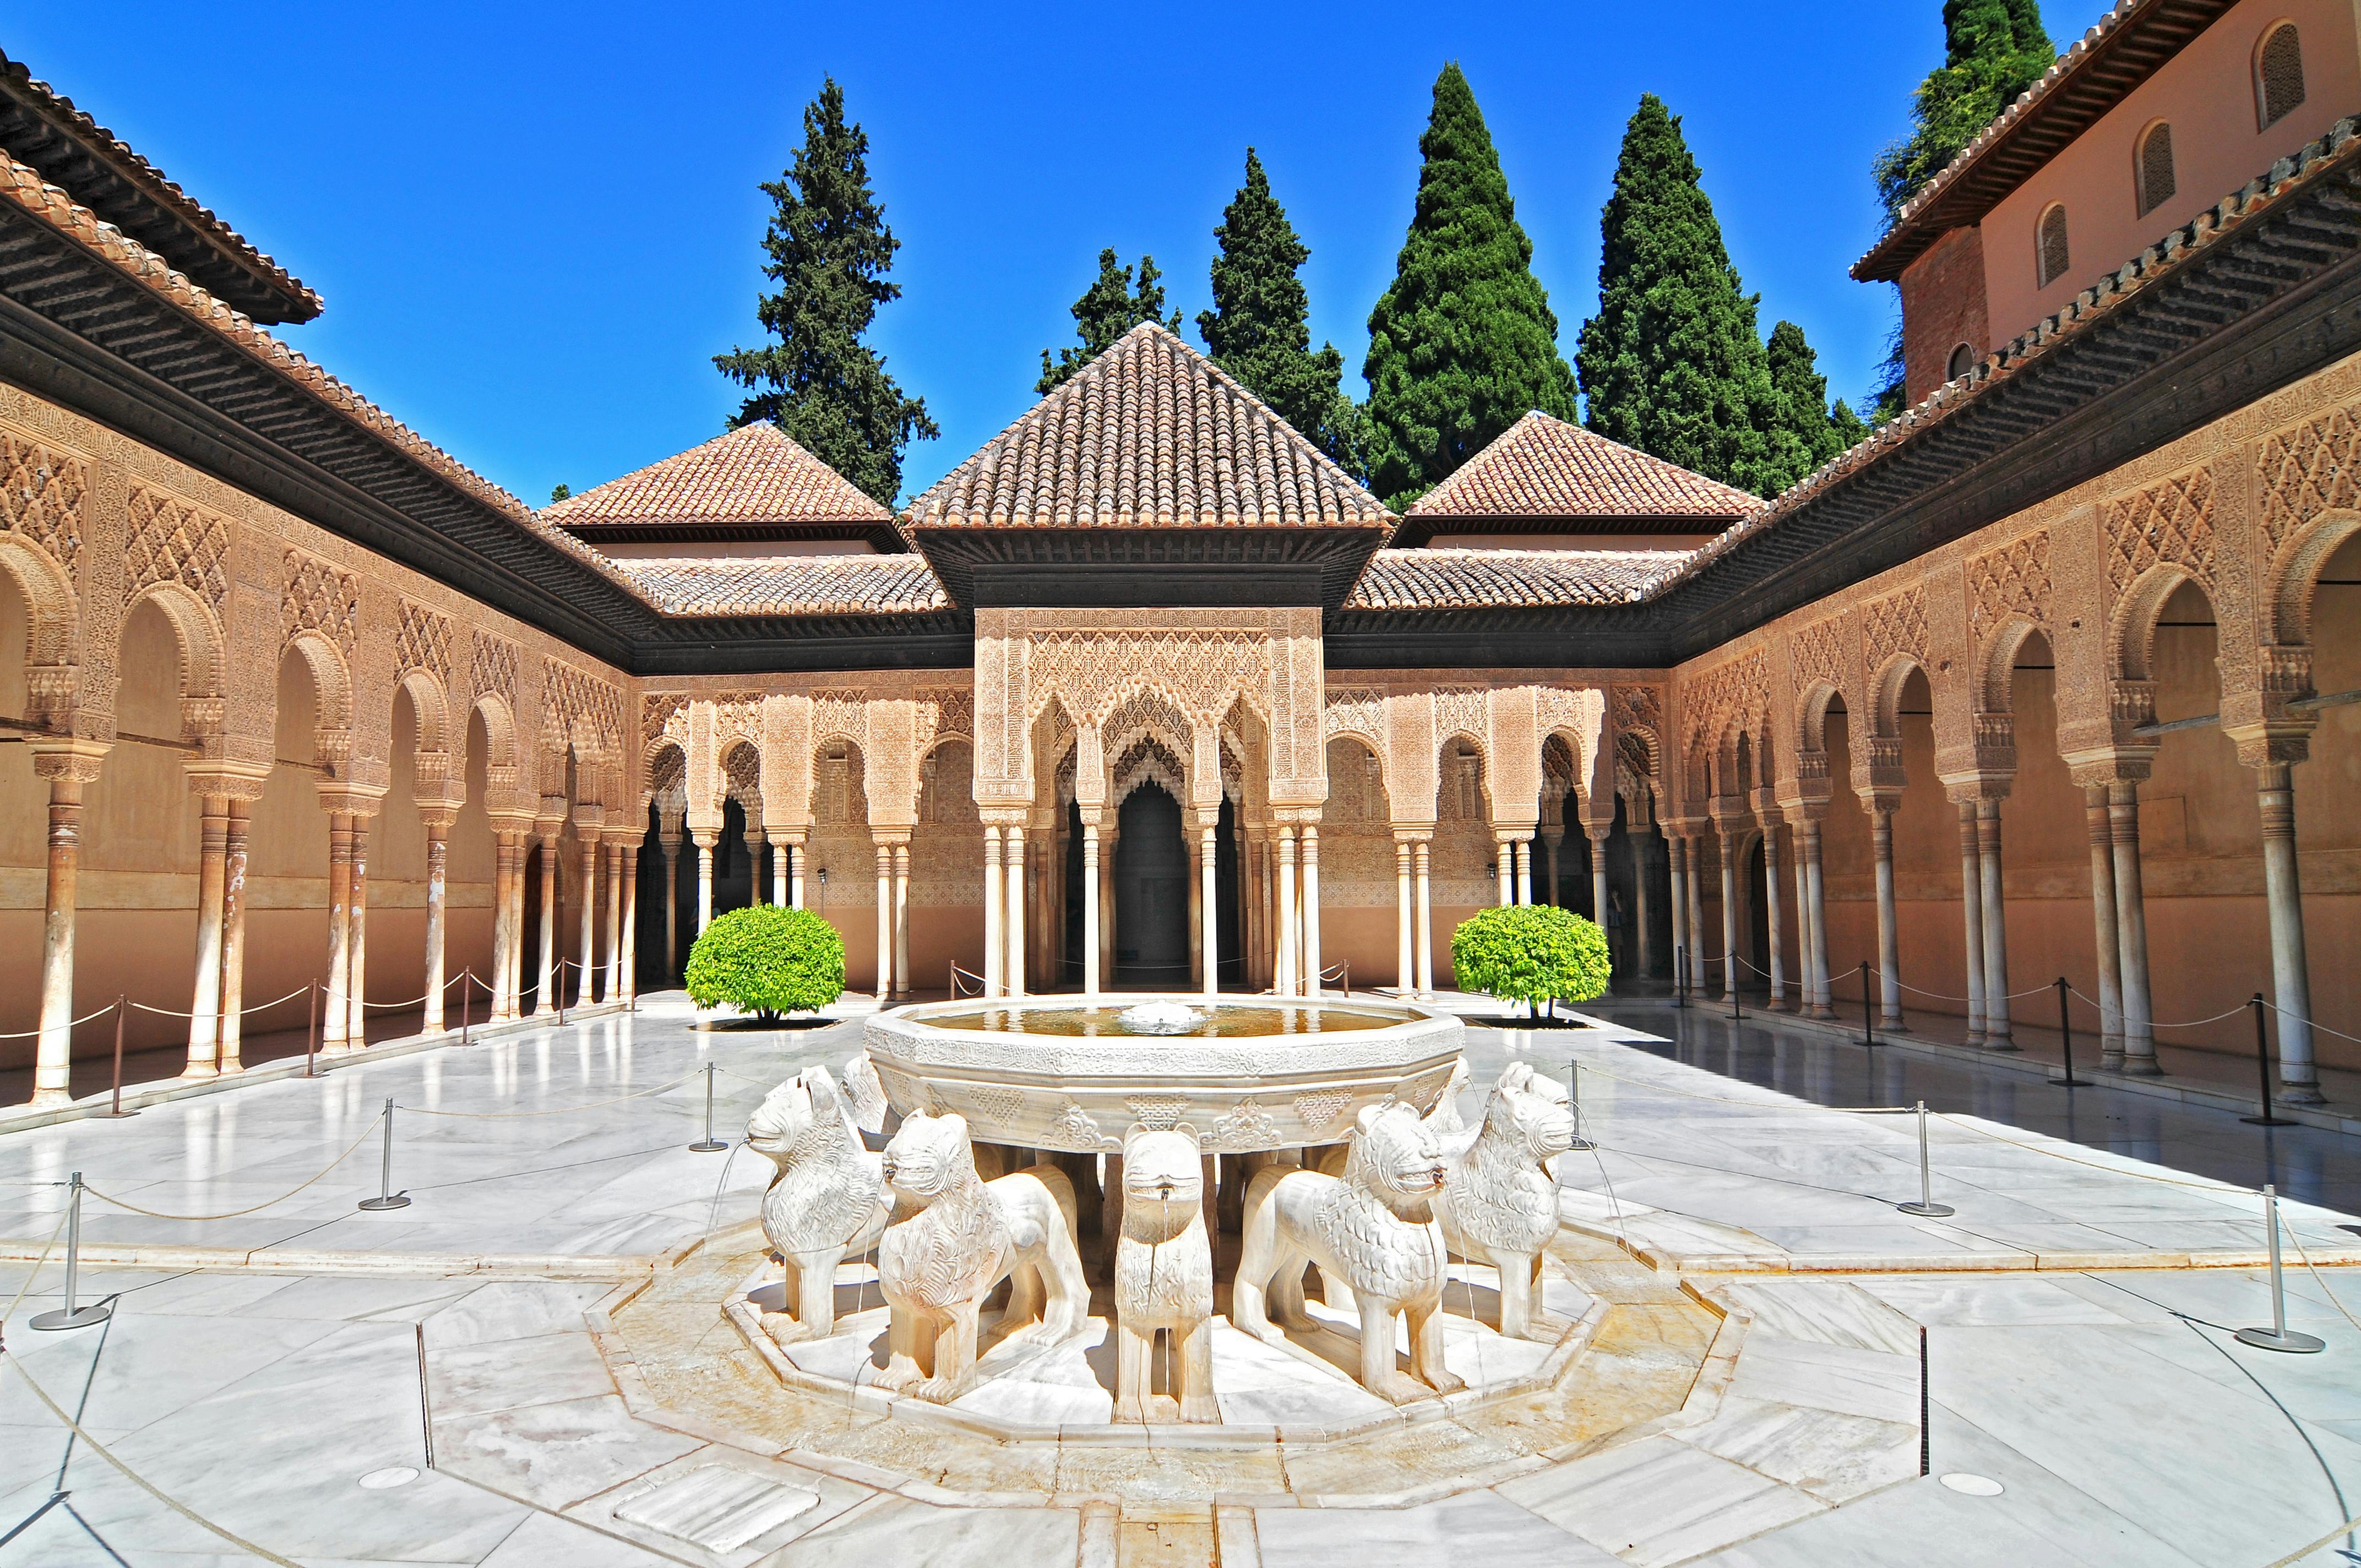 Geführte Gruppentour durch die Alhambra mit den Nasridenpalästen und dem Generalife-Palast